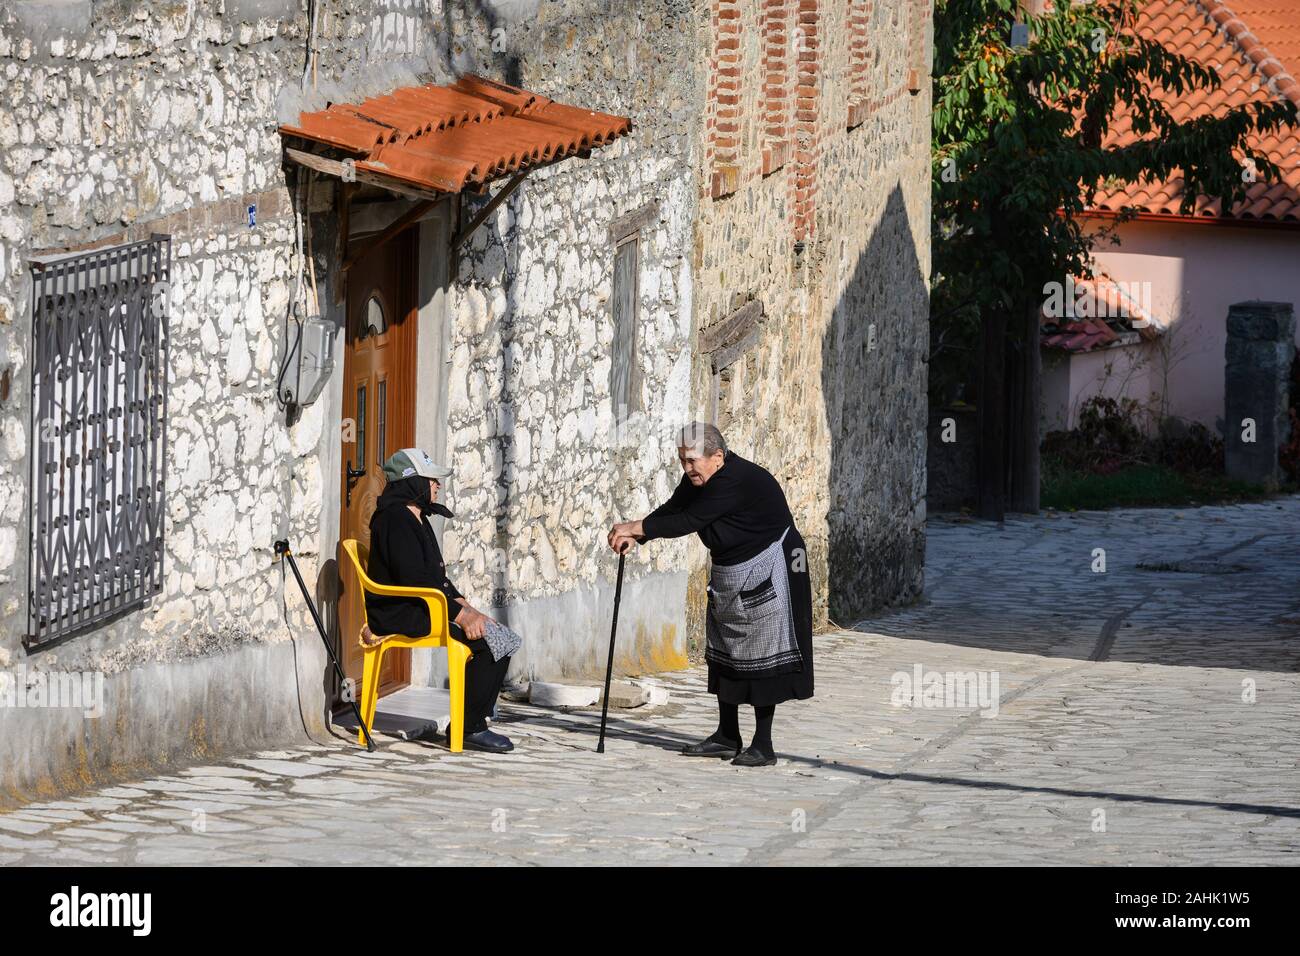 Le persone anziane nel piccolo villaggio di Agios Ghermanos vicino al lago Prespa nel comune di Prespes, Macedonia, Grecia settentrionale. Foto Stock